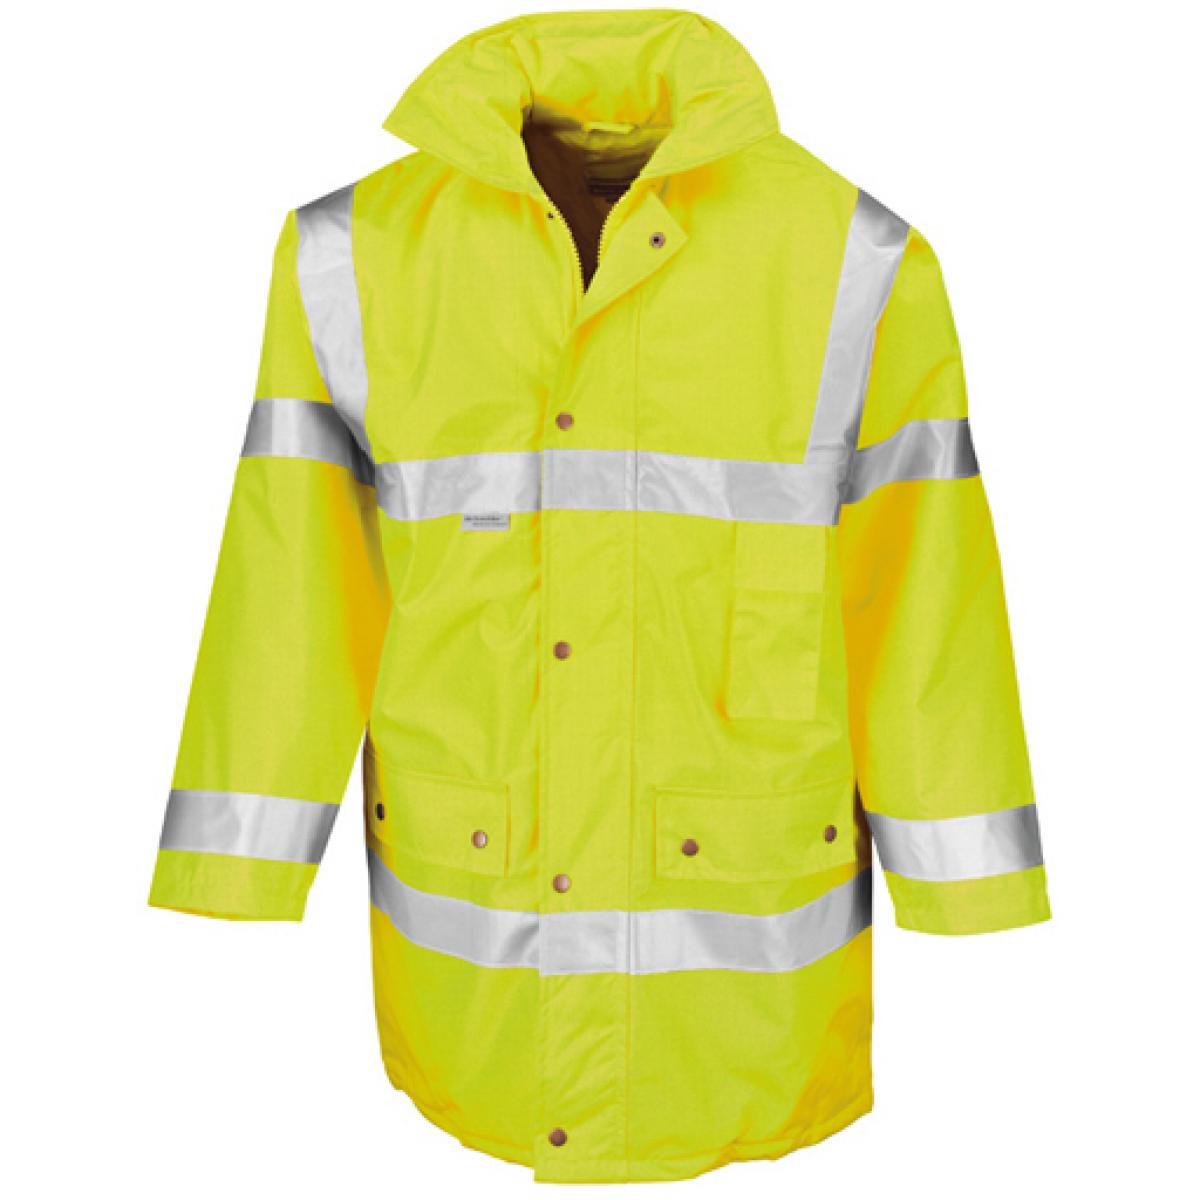 Hersteller: Result Herstellernummer: R018X Artikelbezeichnung: Safety Arbeits Sicherheits Jacke | ISO EN20471:2013 Farbe: Fluorescent Yellow